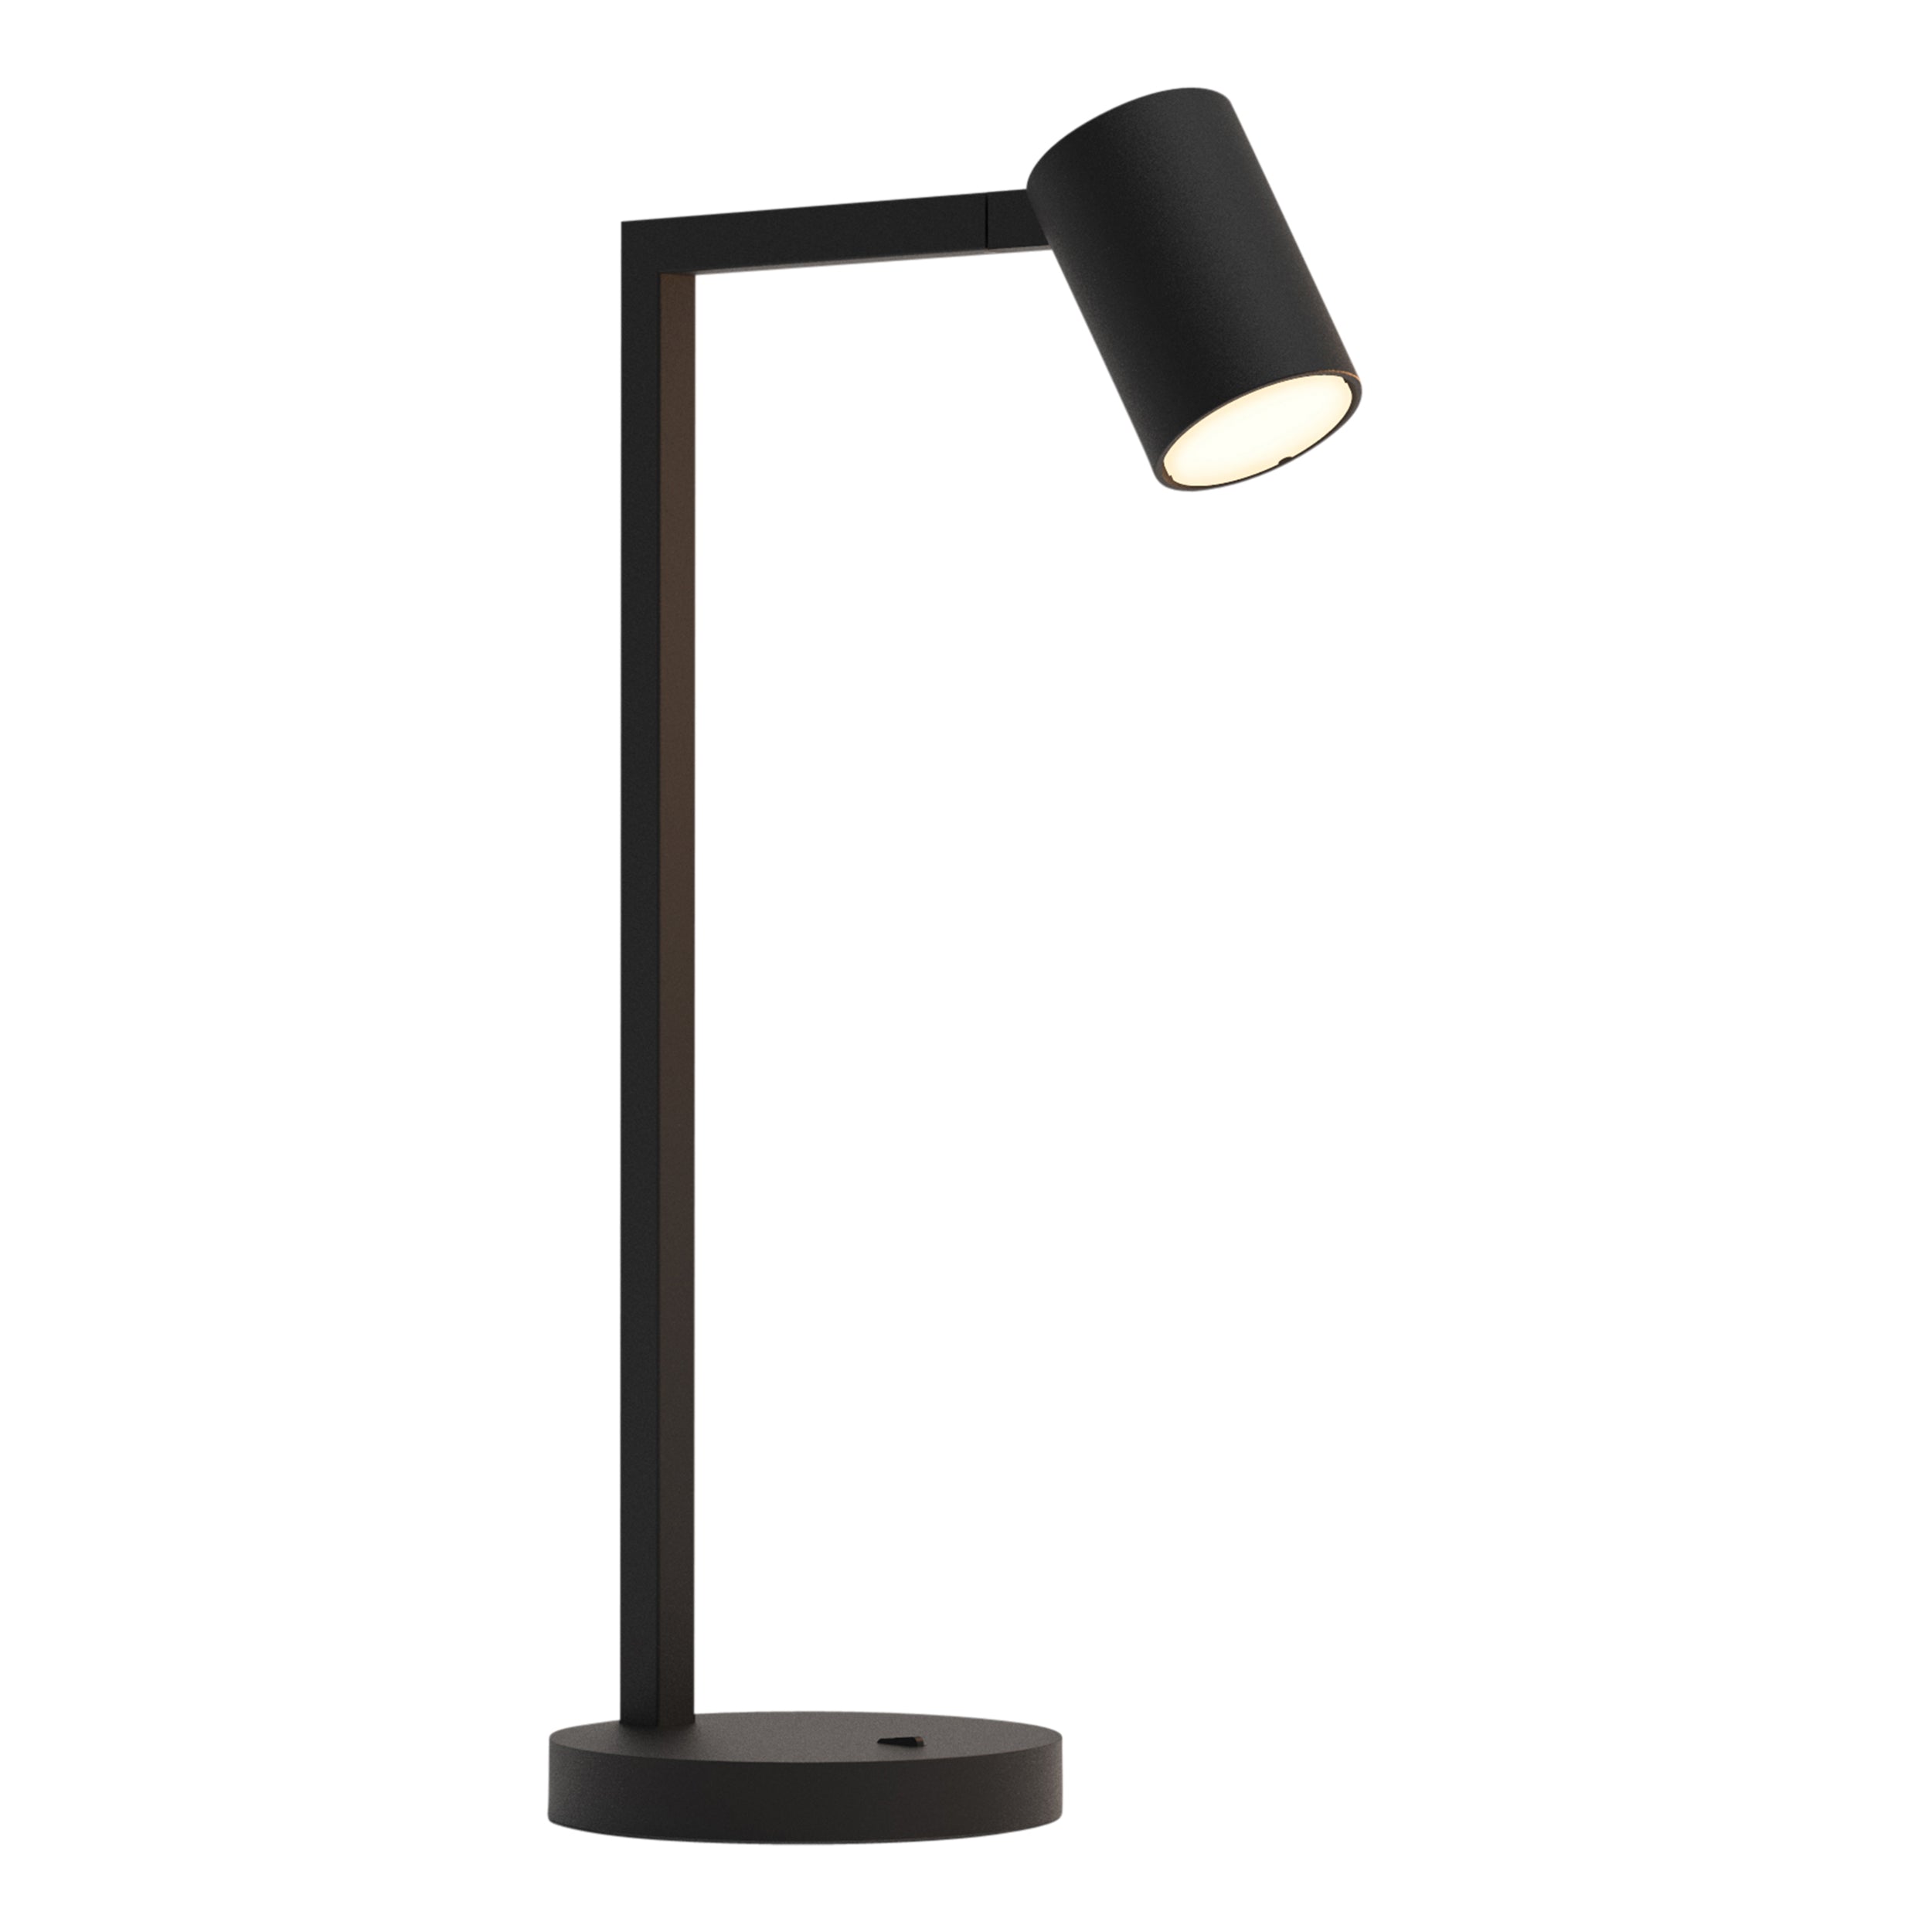 Sort bordlampe med justerbar hoved. Lampen har et enkelt design med firkantede linjer/vinkler.